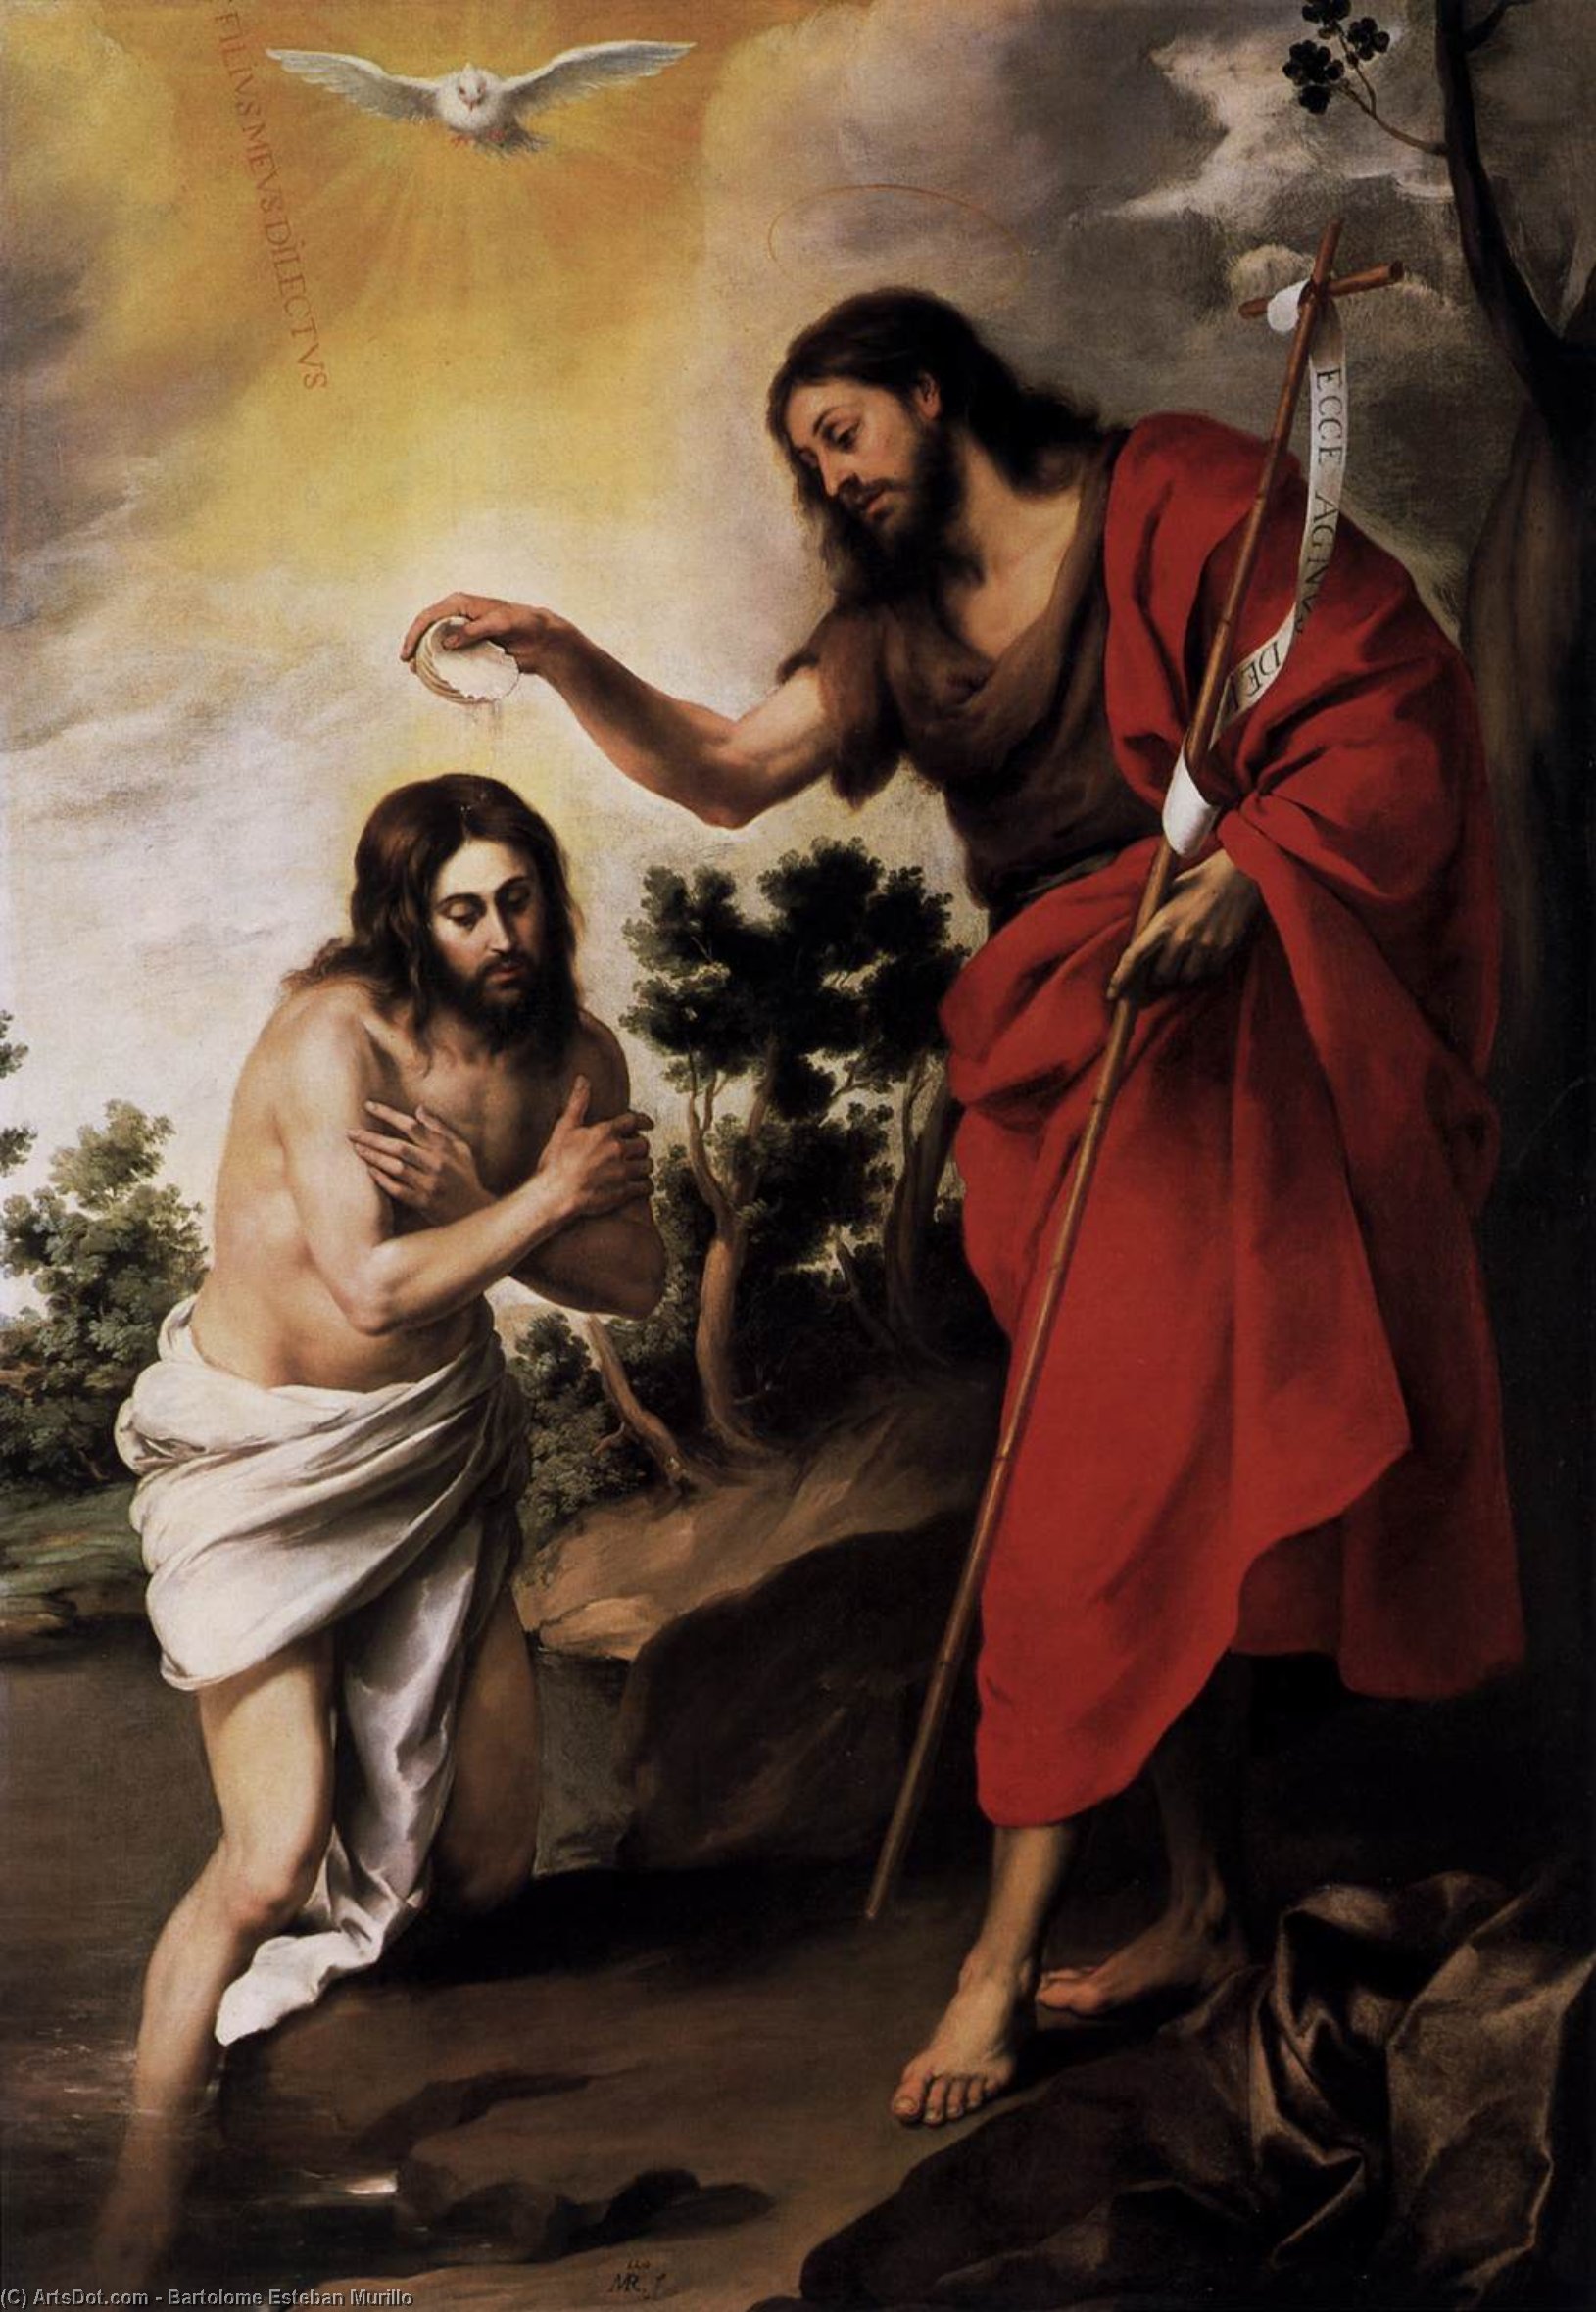 WikiOO.org - אנציקלופדיה לאמנויות יפות - ציור, יצירות אמנות Bartolome Esteban Murillo - Baptism of Christ